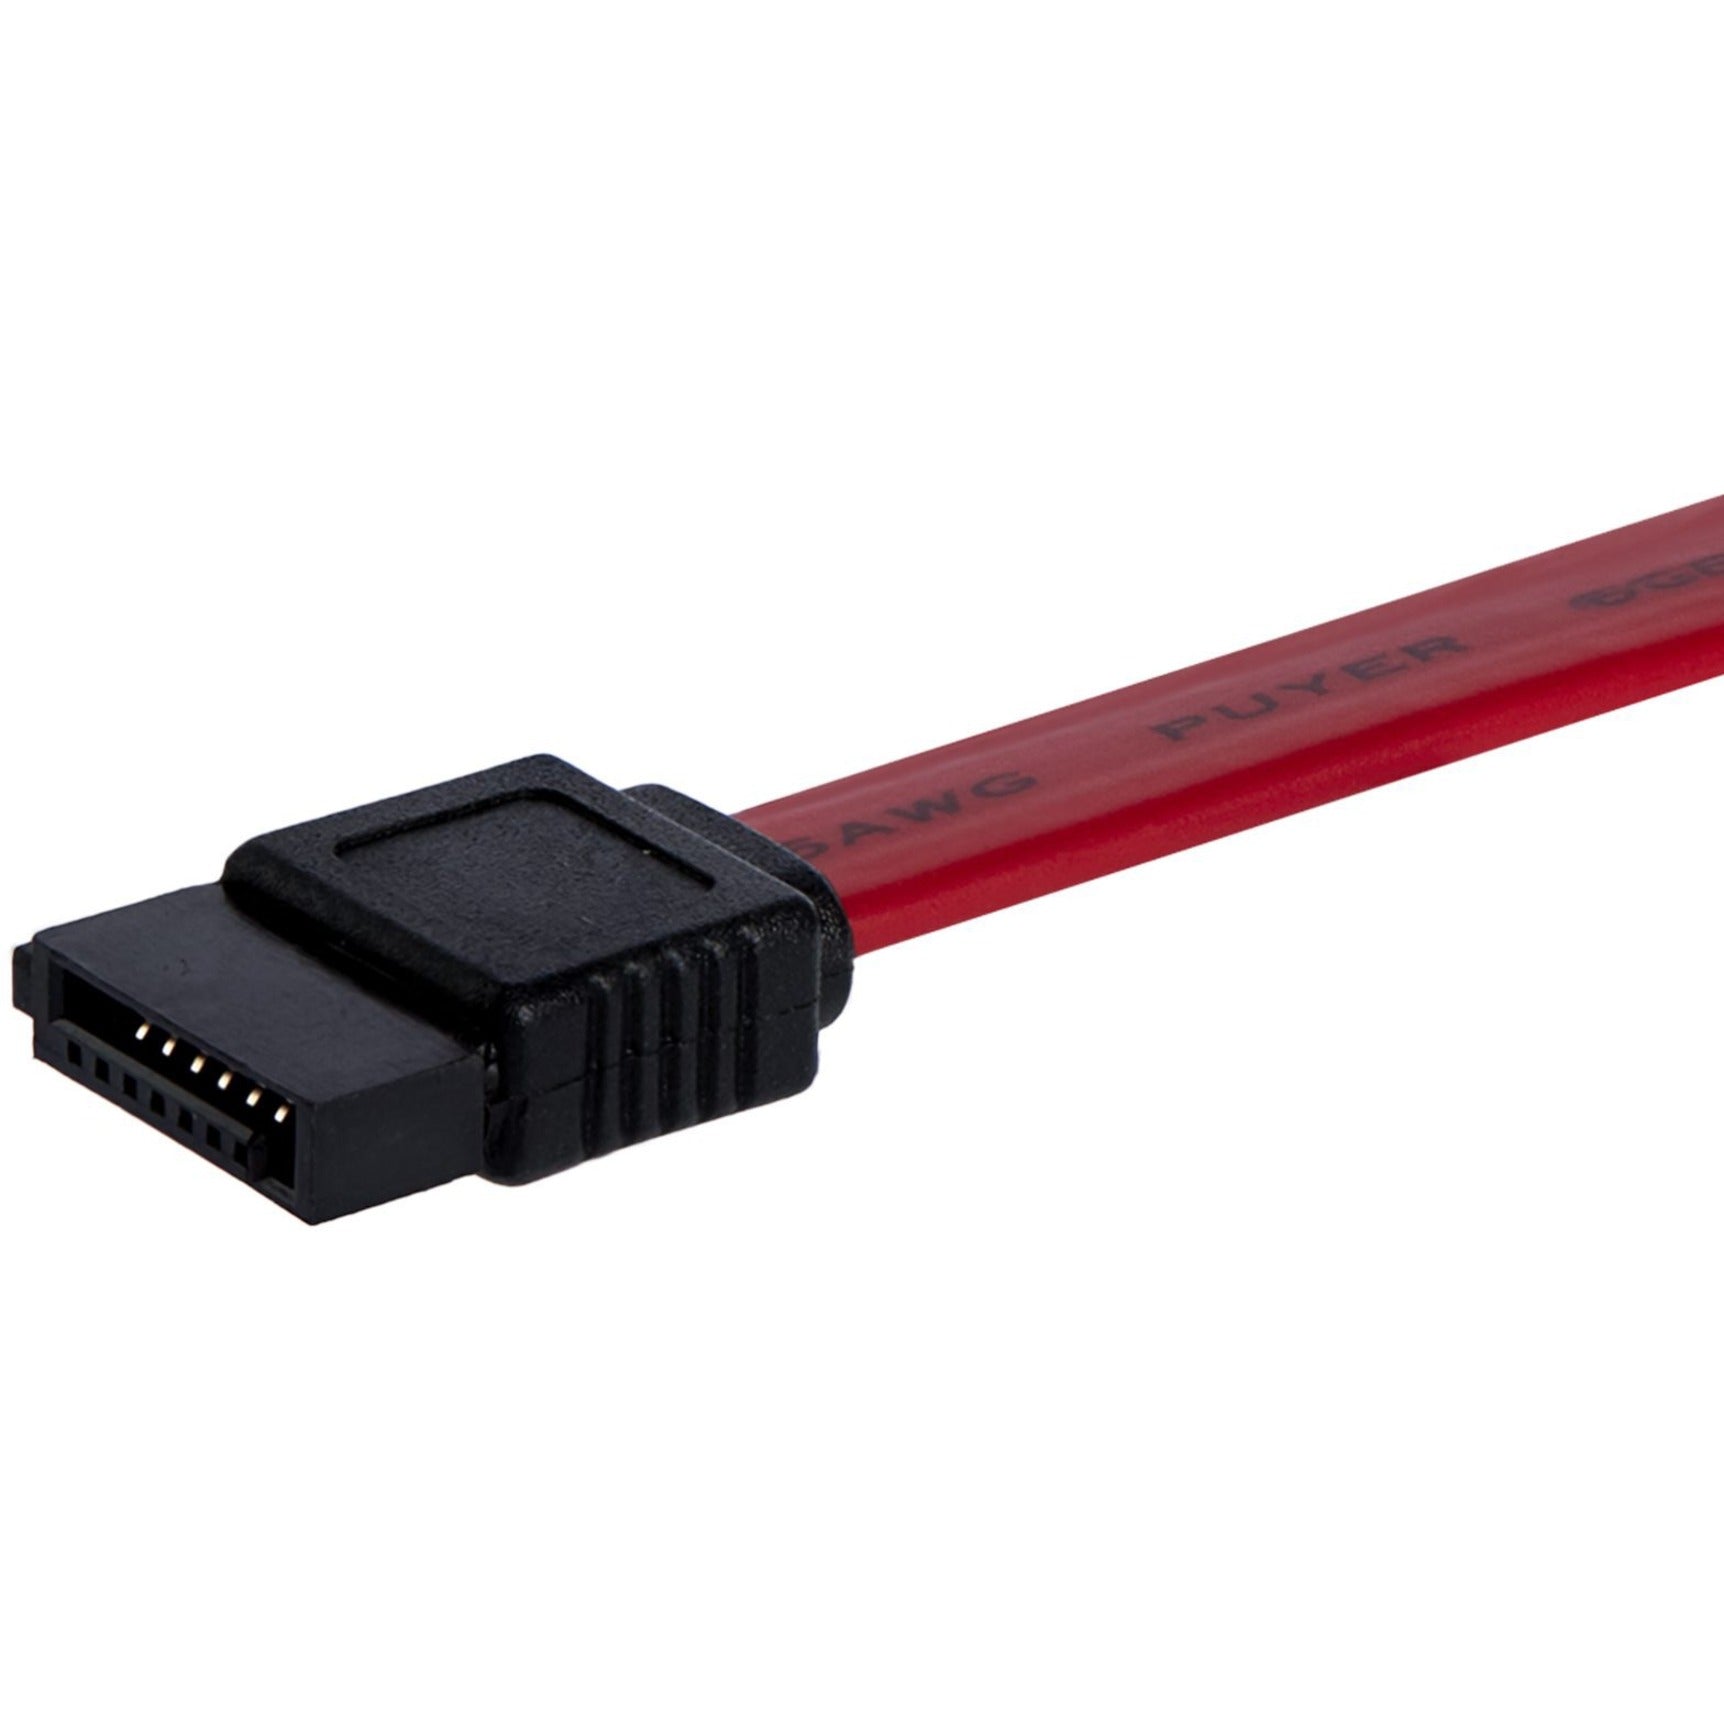 StarTech.com Cable SATA12 SATA Serial ATA de 12 pulgadas Flexible Velocidad de Transferencia de Datos de 6 Gbit/s Rojo.